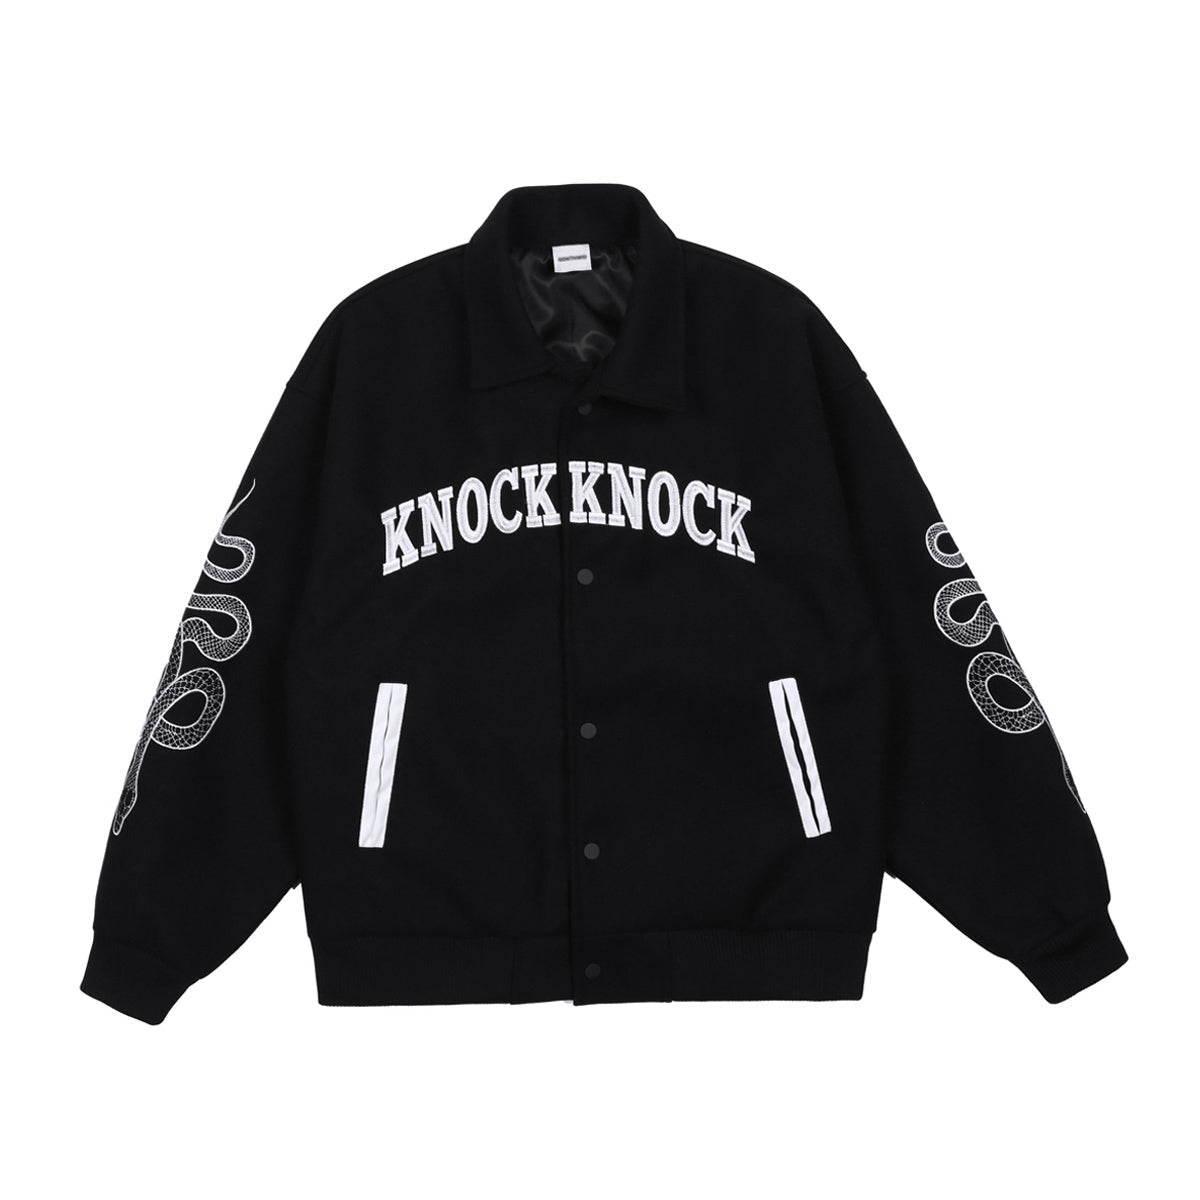 Knock Knock Varsity Jacket - Unisex Black College Jacket